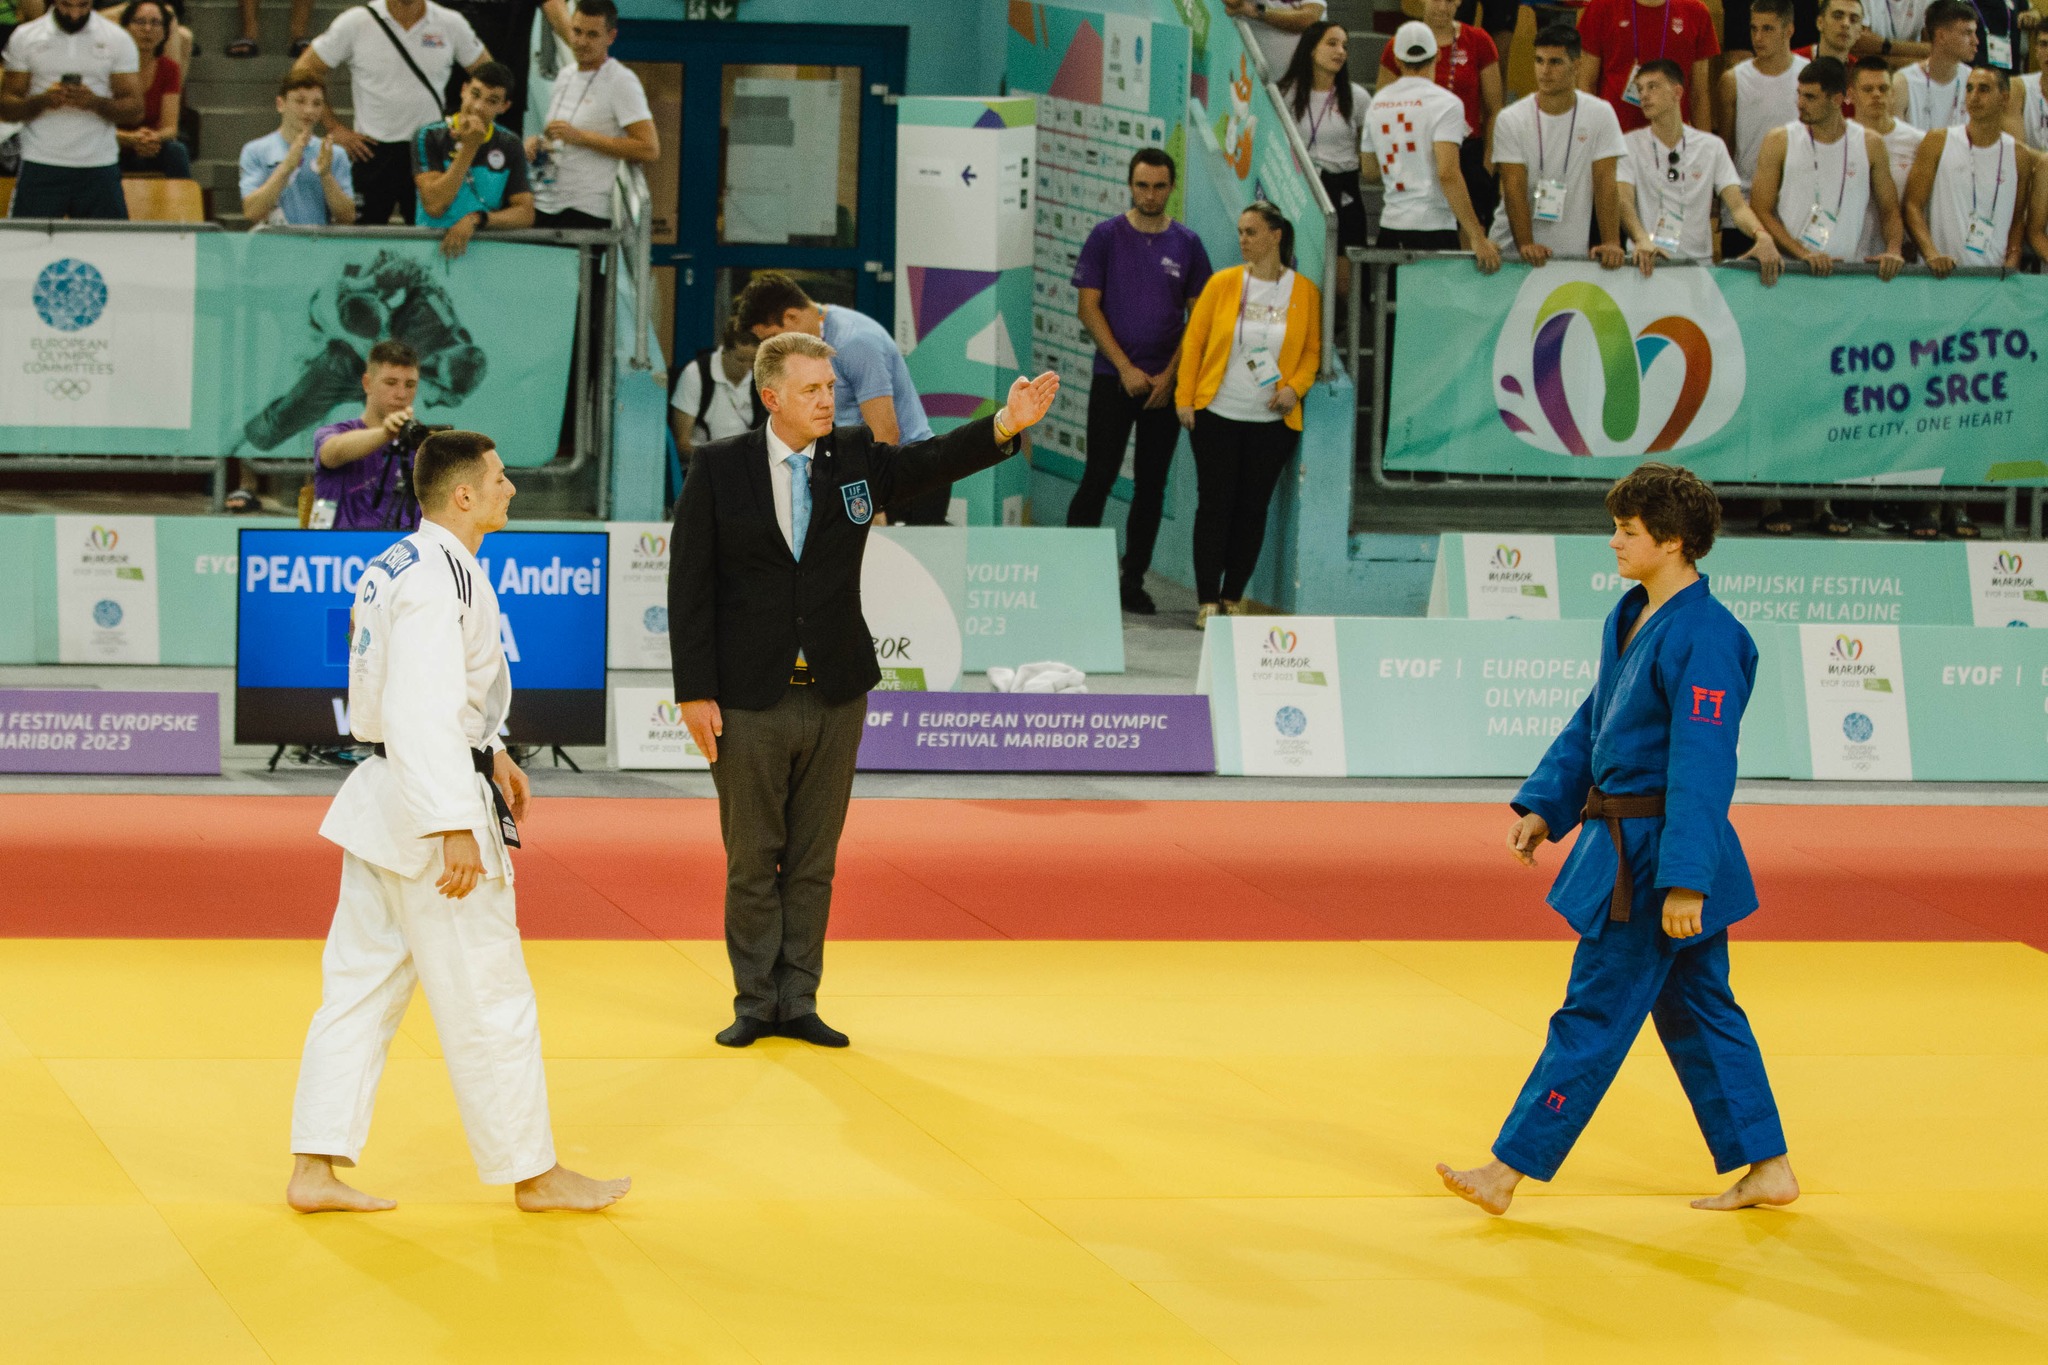 FOTO Bronz pentru Moldova, la o competiție în Slovenia: judocanul Andrei Peaticovschi a obținut 4 victorii